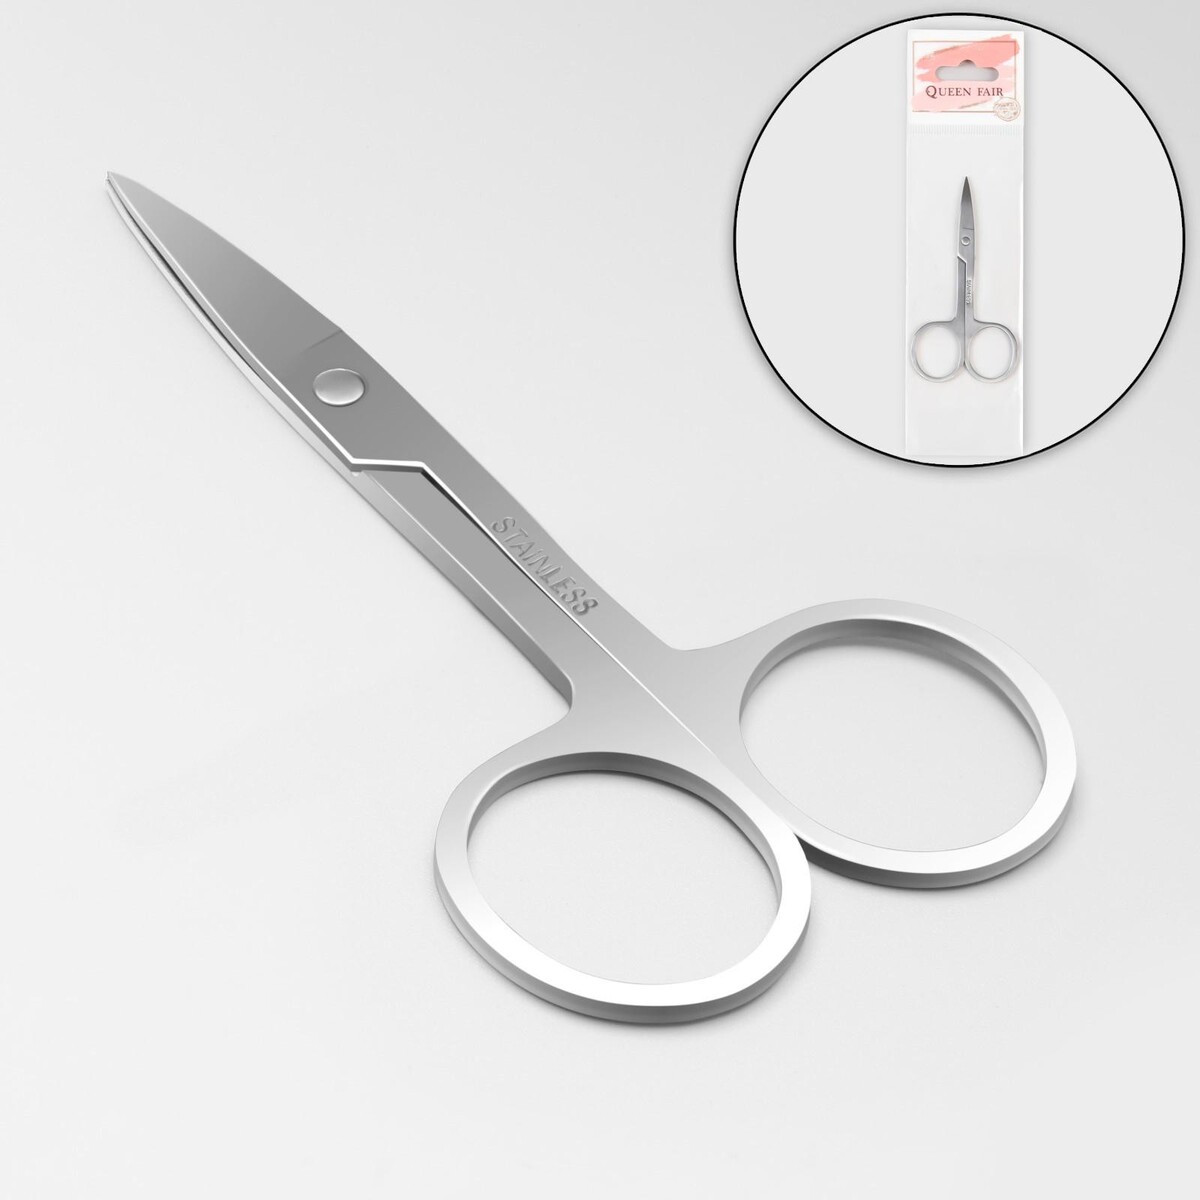 Ножницы маникюрные, прямые, широкие, 9 см, цвет серебристый ножницы безопасные прямые 9 см серебристый